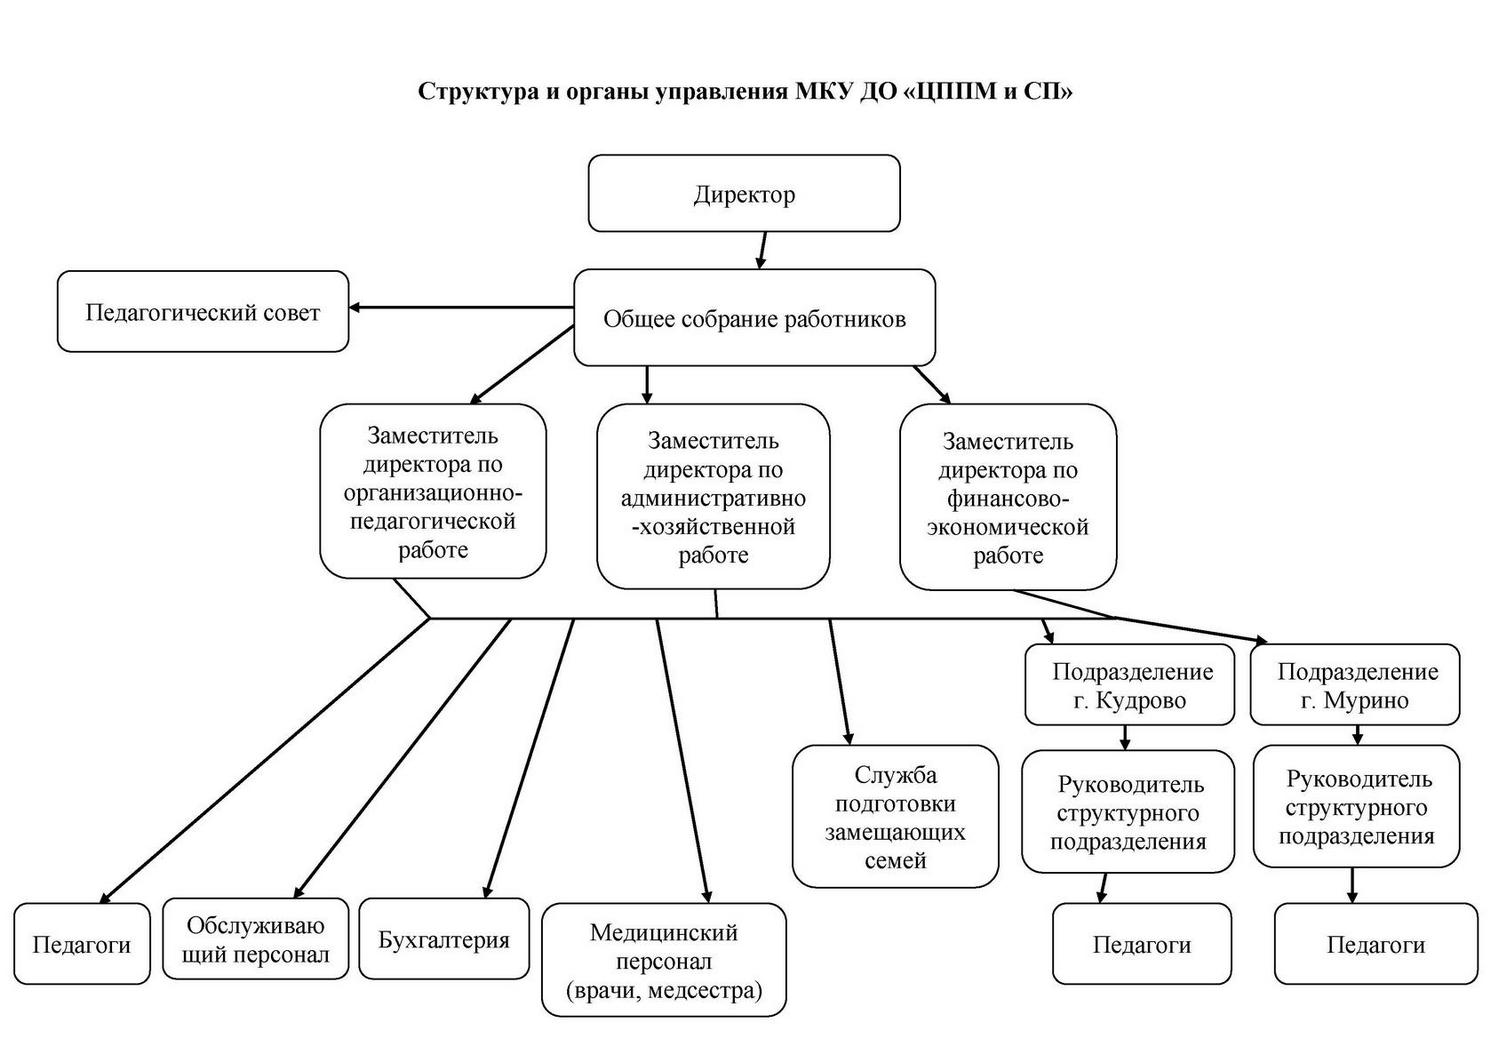 Схема управления МКУ ДО с Кудрово и Мурино